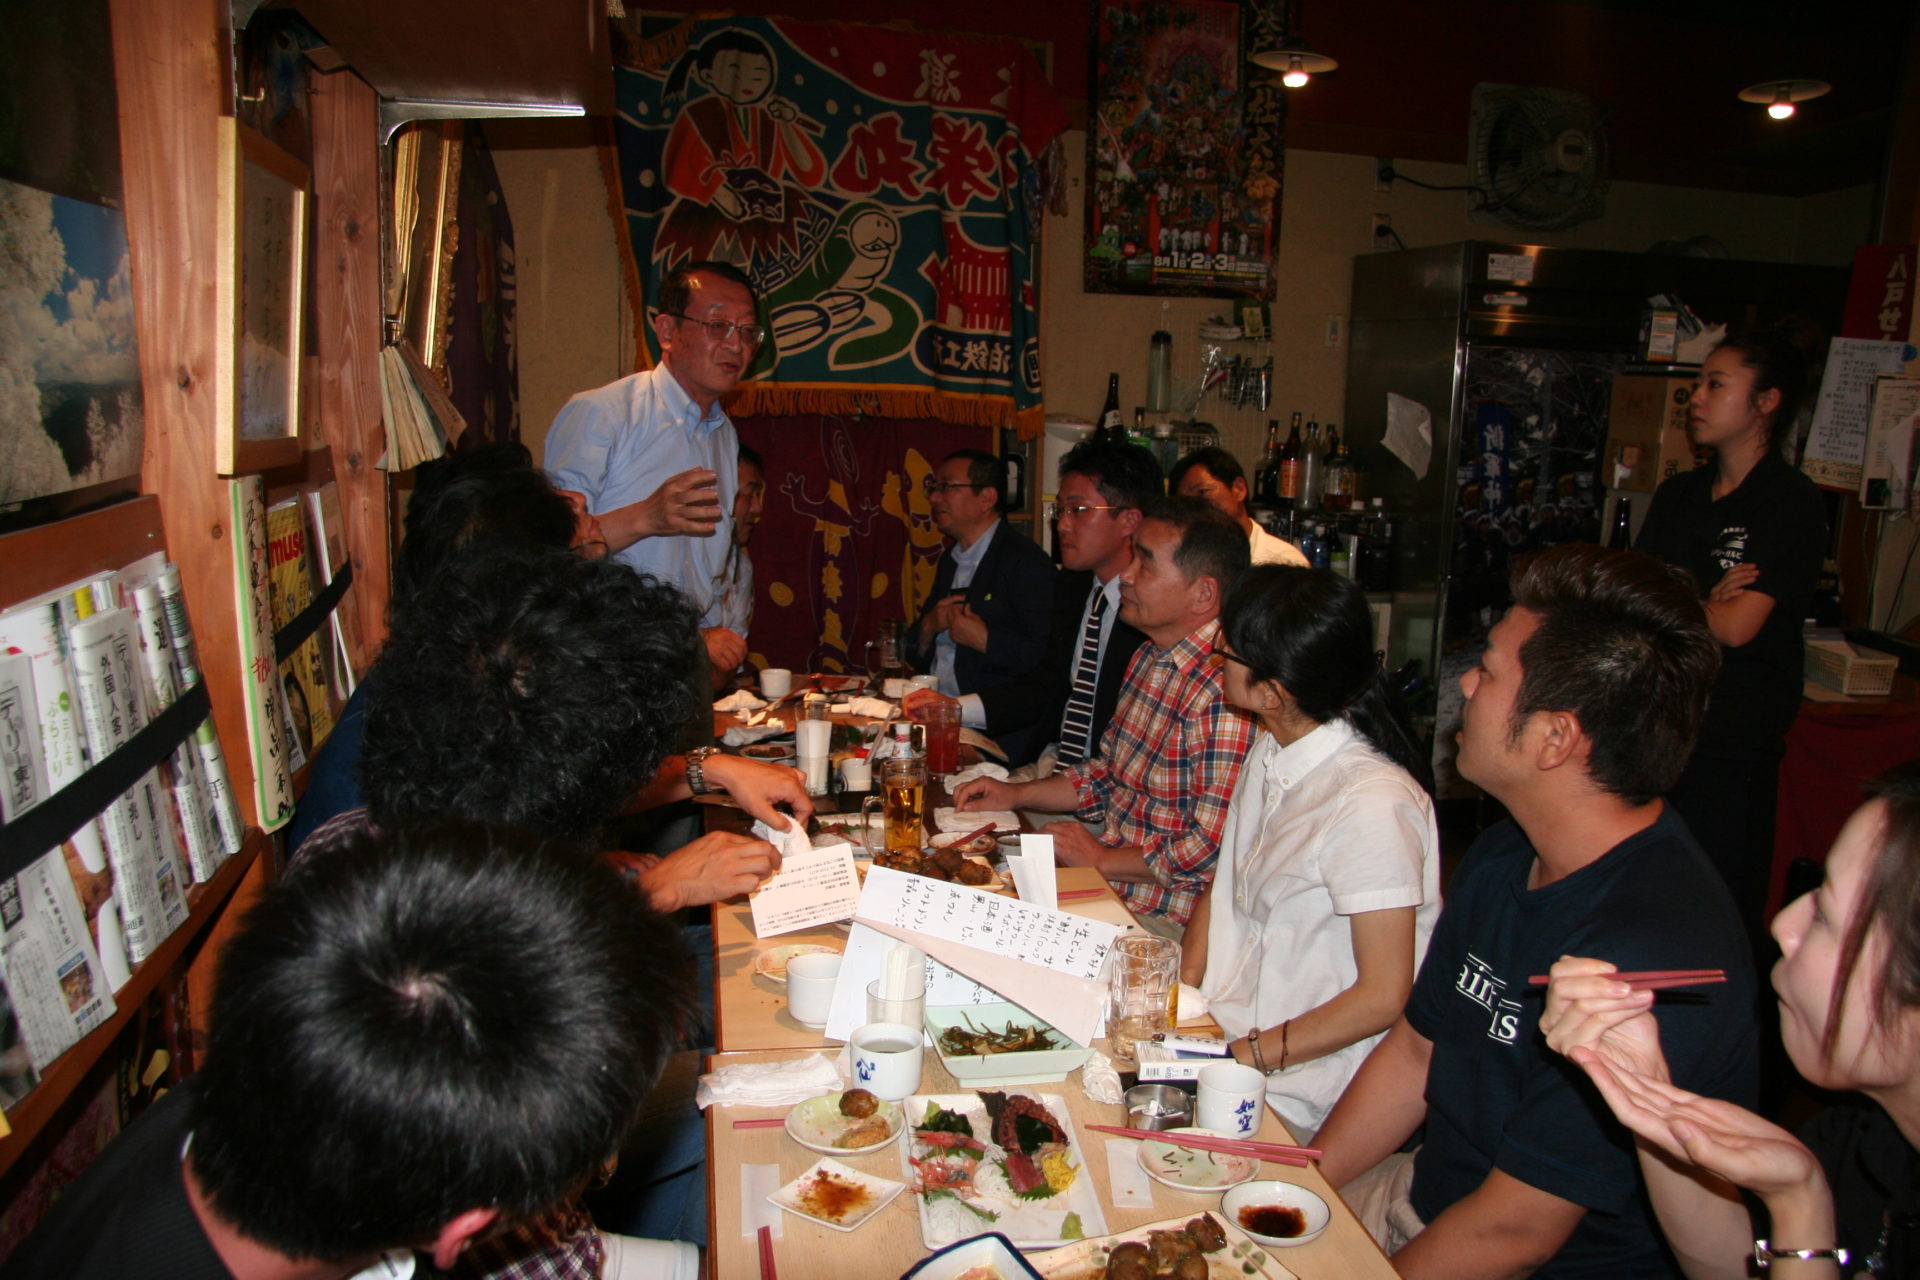 IMG 8962 1920x1280 - 2015年6月15日 AOsuki定例飲み会開催しました。